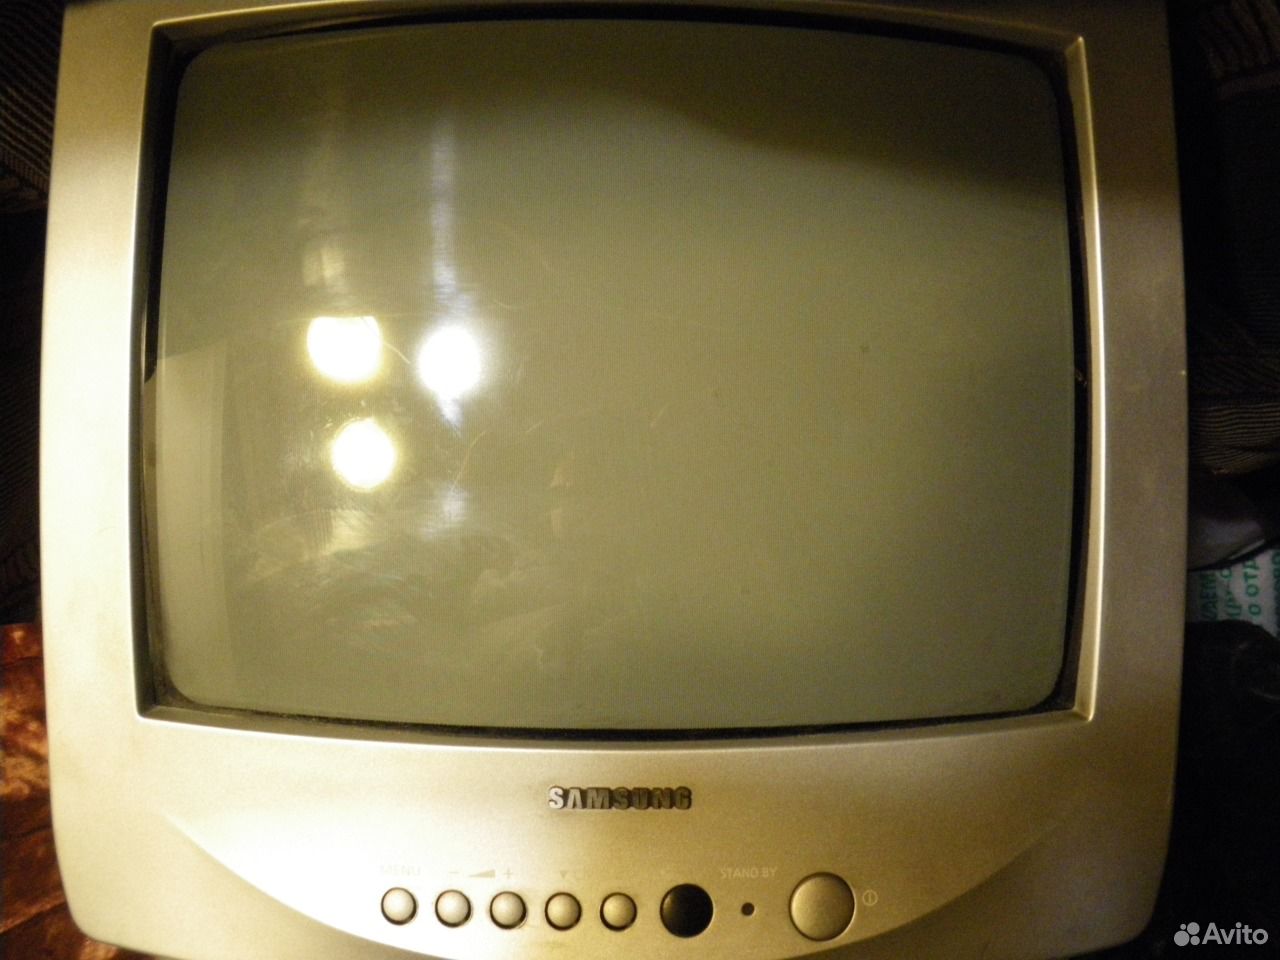 Хороший телевизор в екатеринбурге. Маленький телевизор. Телевизор Samsung маленький. Телевизор самсунг маленький старый. Старый телевизор самсунг 2000.